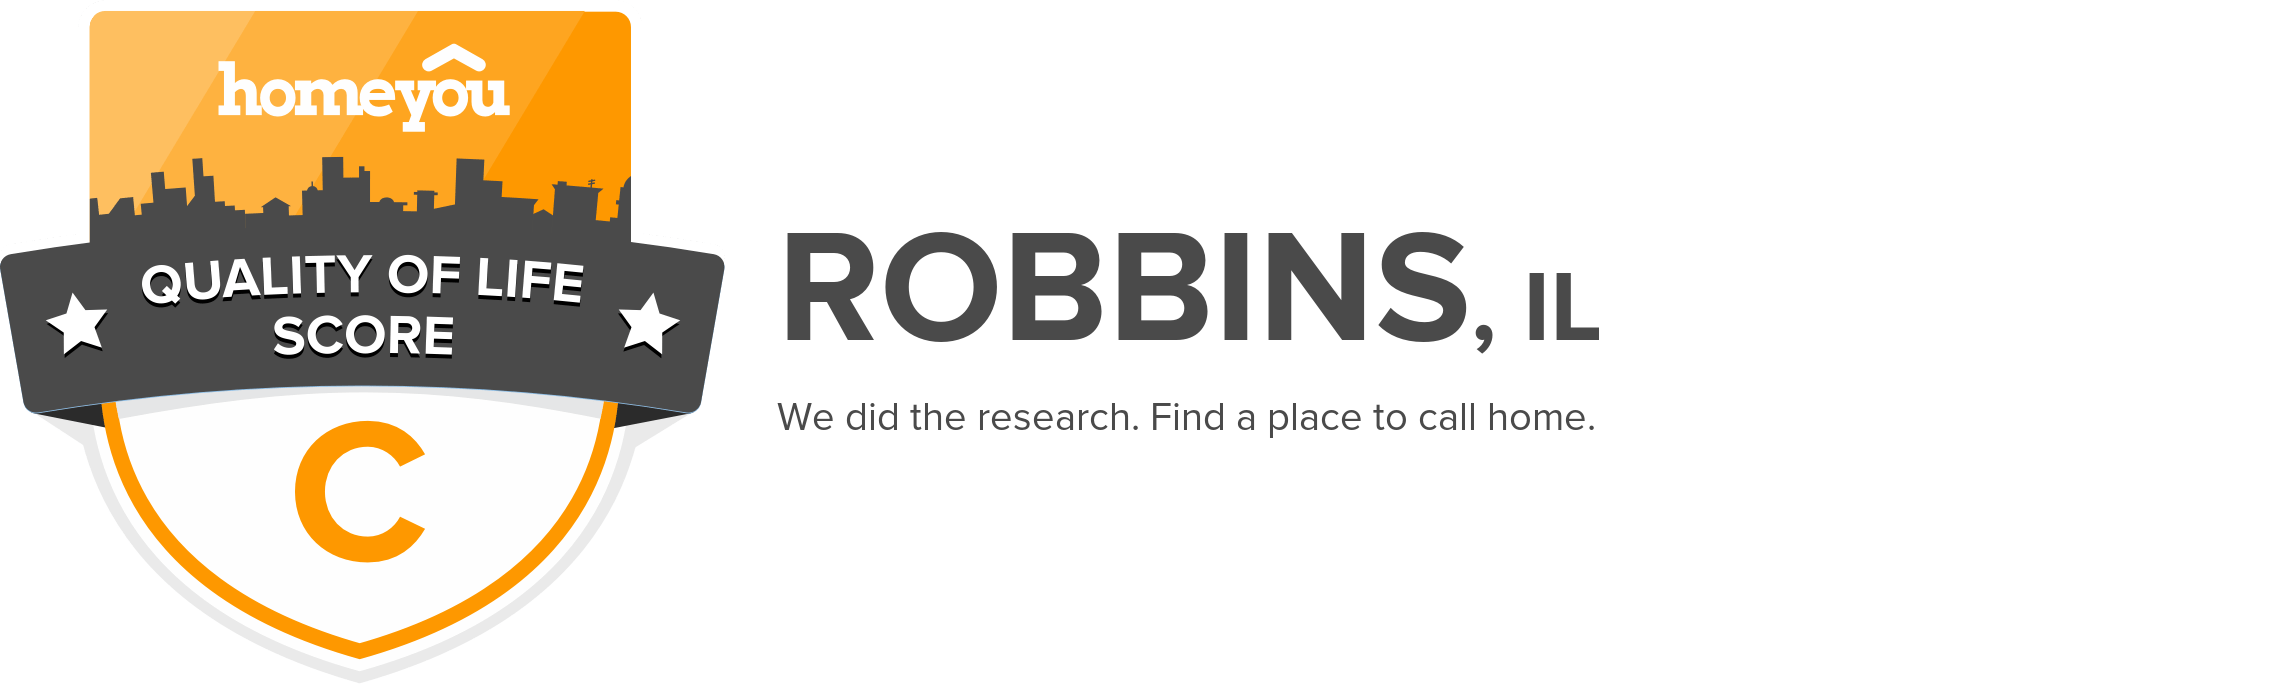 Robbins, IL